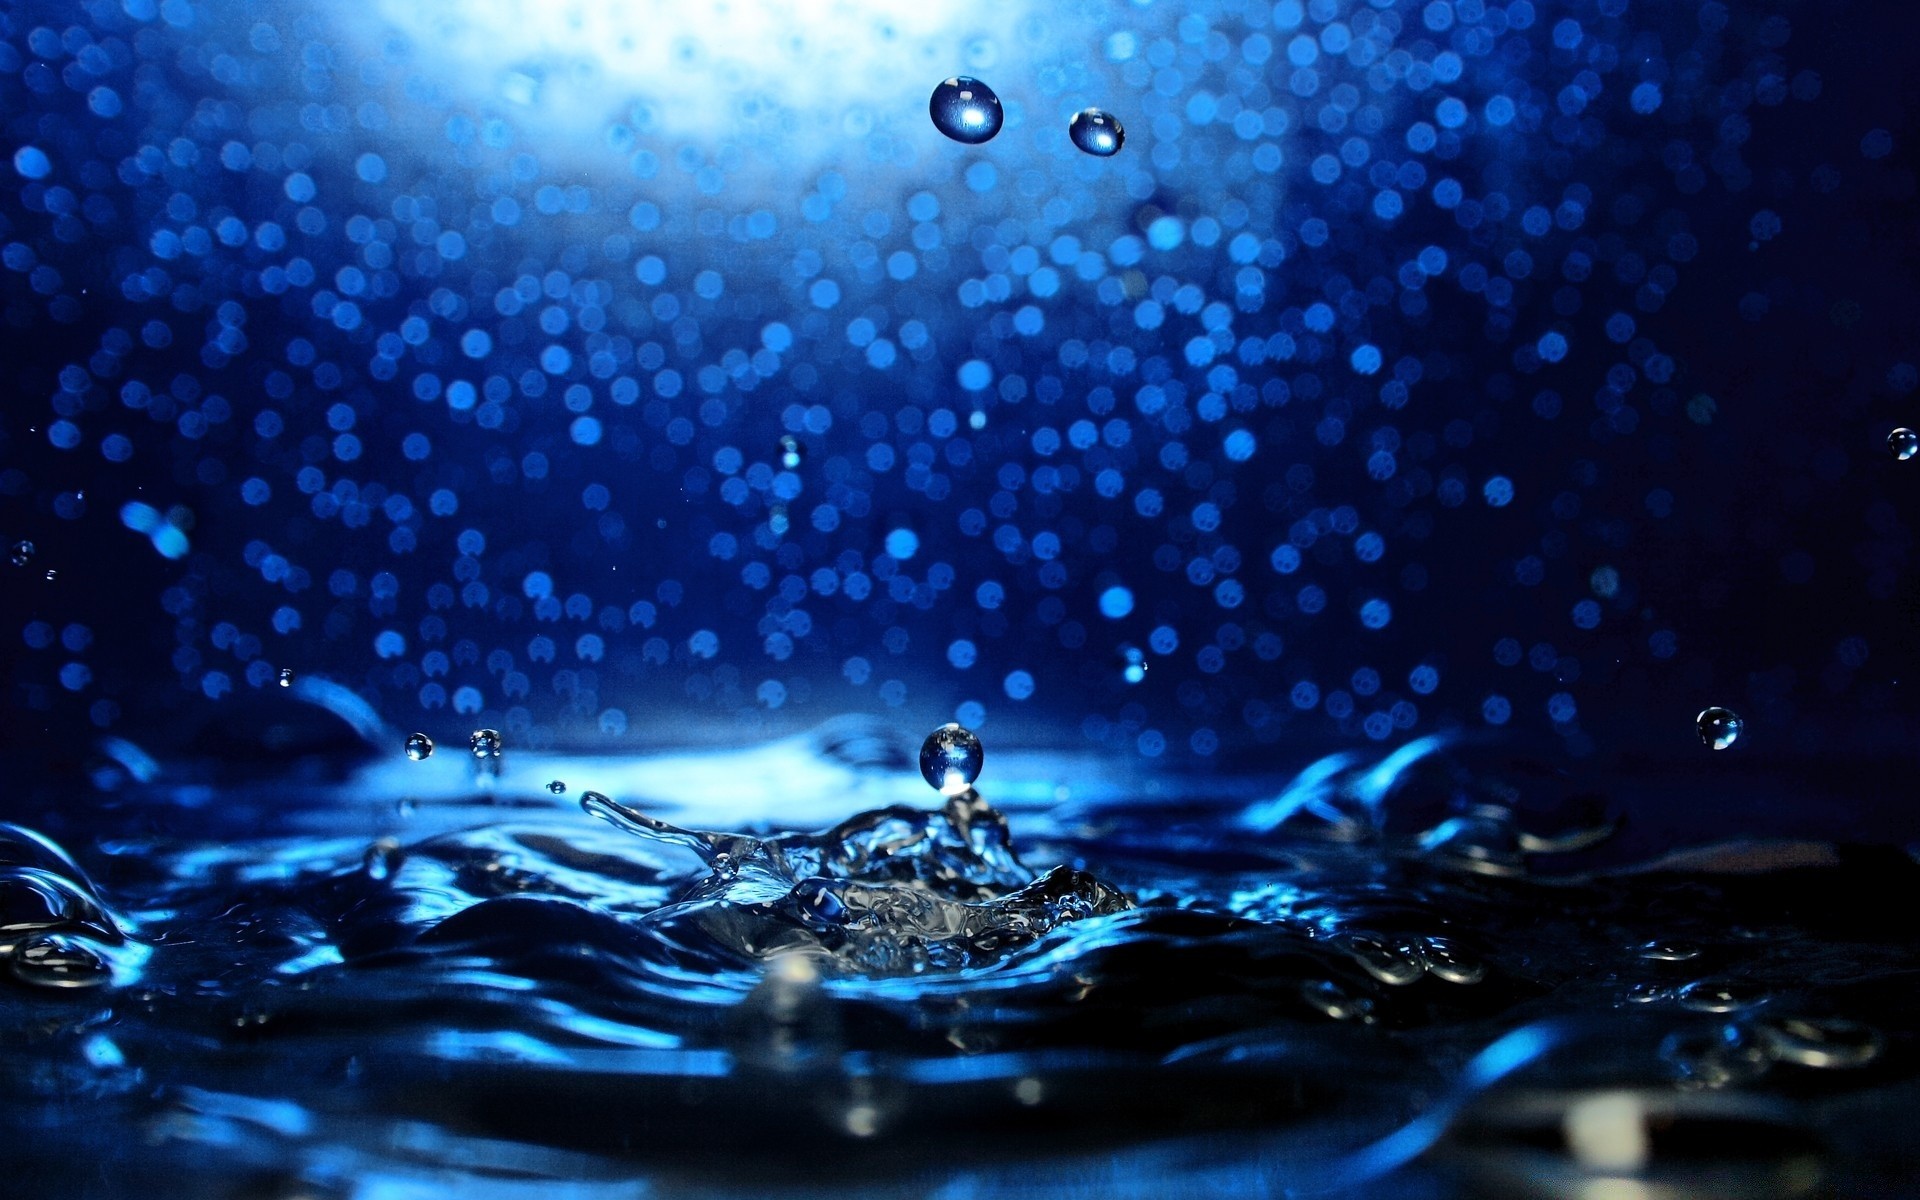 капельки и вода падение мокрый дождь капли воды всплеск чистота пузырь понятно жидкость пить движения пульсация чистые водослива холодная подводный отражение свет